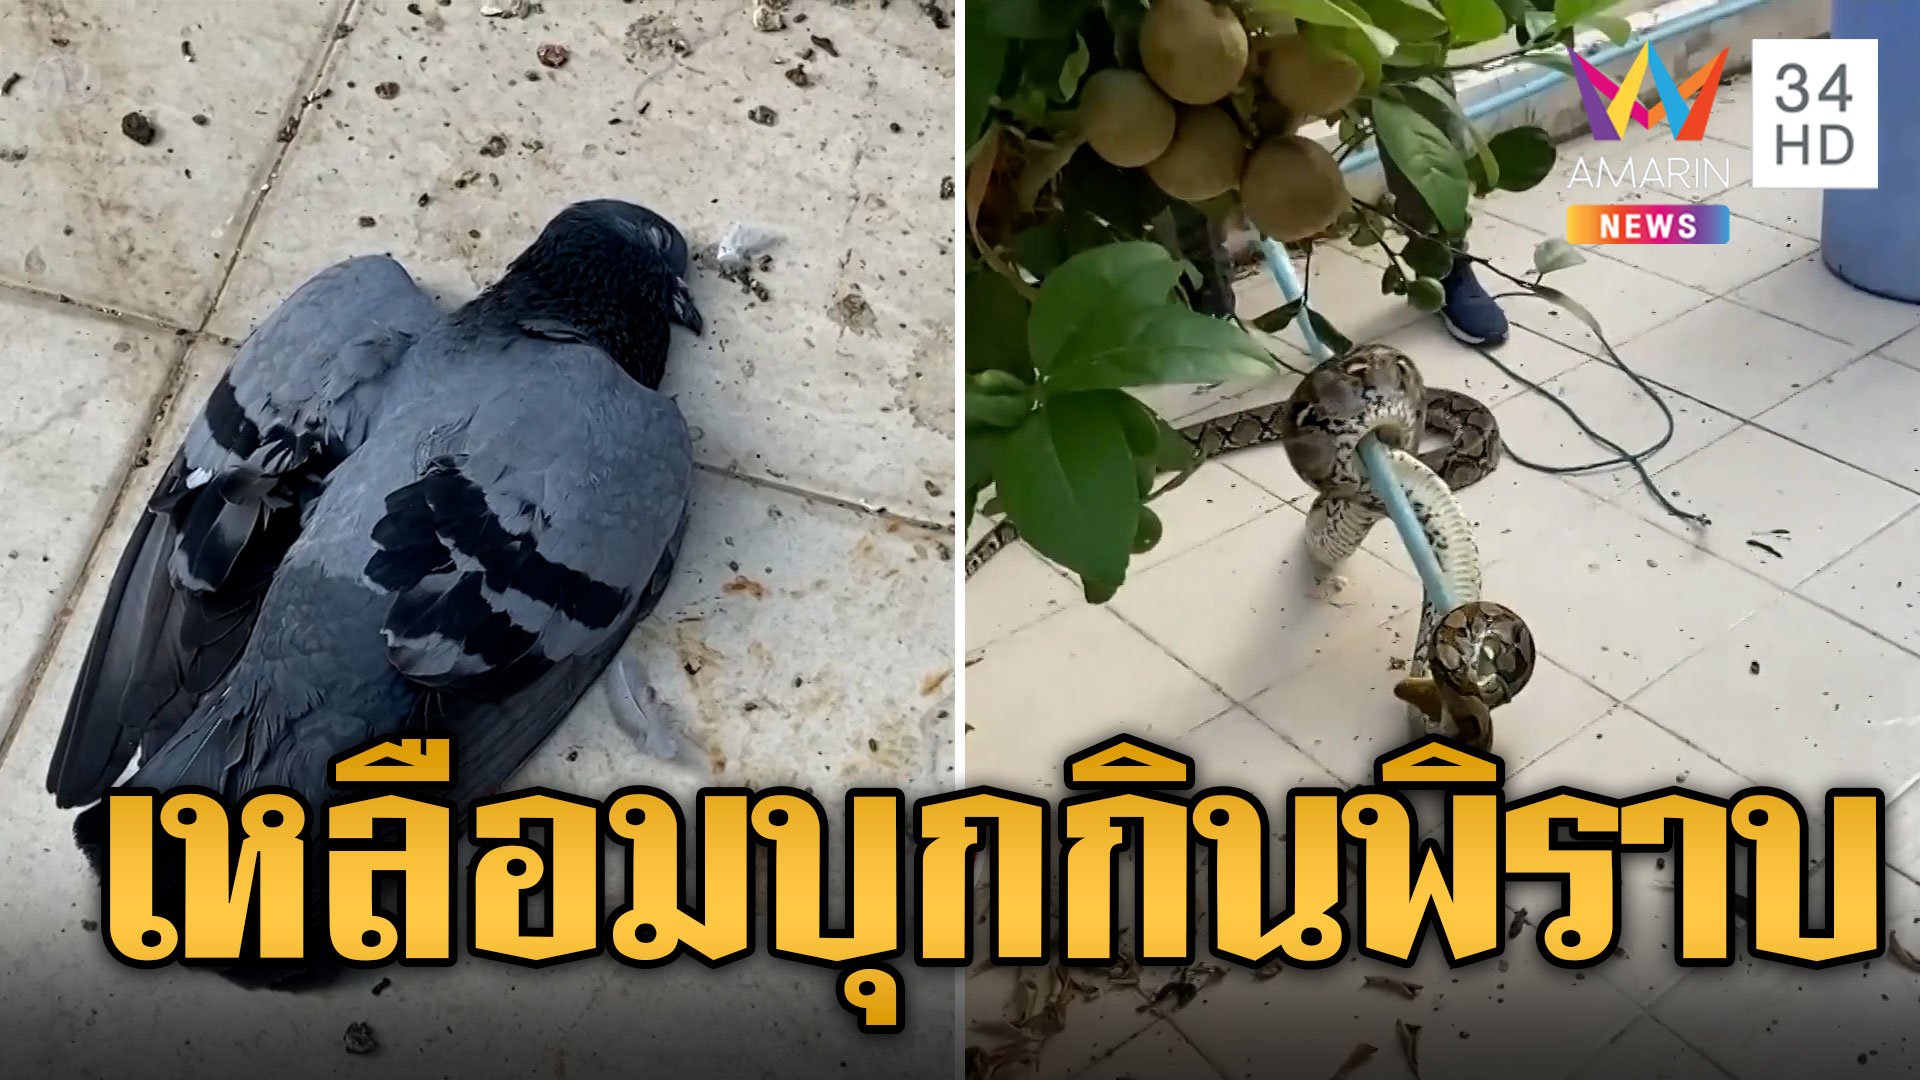 นกพิราบชะตาขาด เหลือม 4 เมตรบุกกินกลางบ้าน | ข่าวอรุณอมรินทร์ | 26 ก.พ. 67 | AMARIN TVHD34